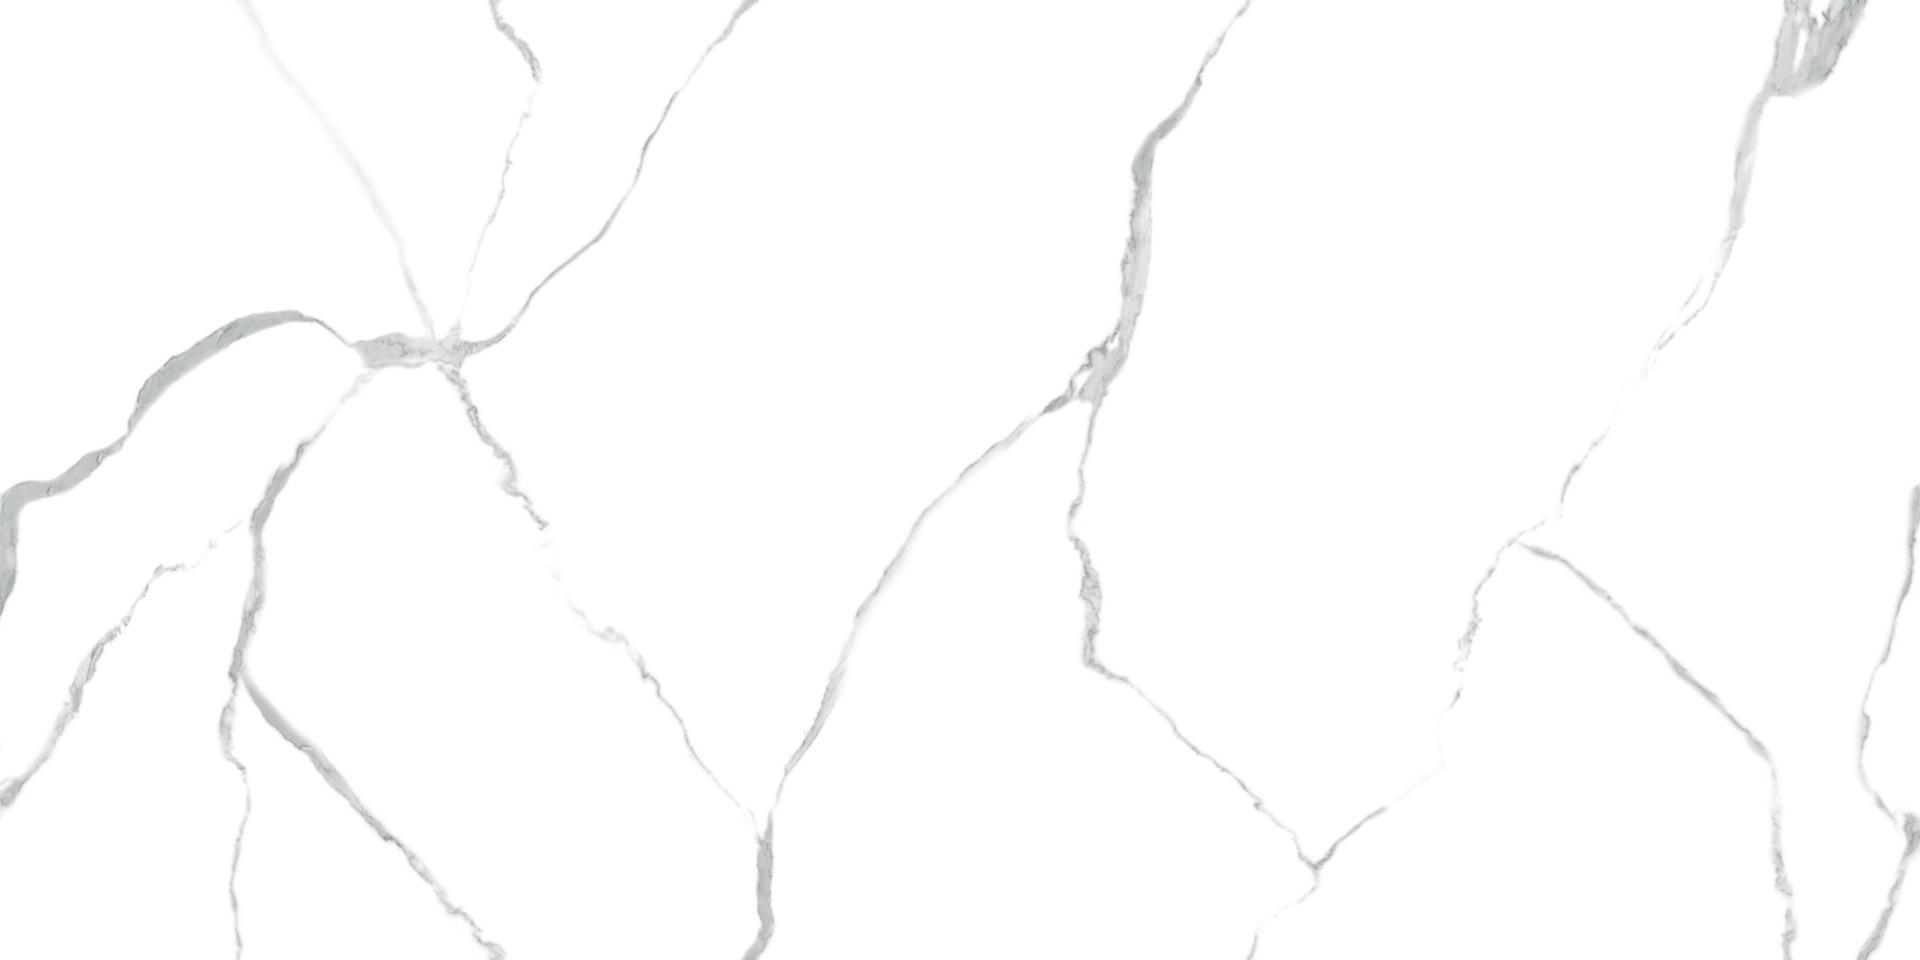 White Marble Tiles for Bathroom Tiles, Living Room Tiles, Bedroom Tiles, Accent Tiles, Hospital Tiles, High Traffic Tiles, Bar/Restaurant, Commercial/Office